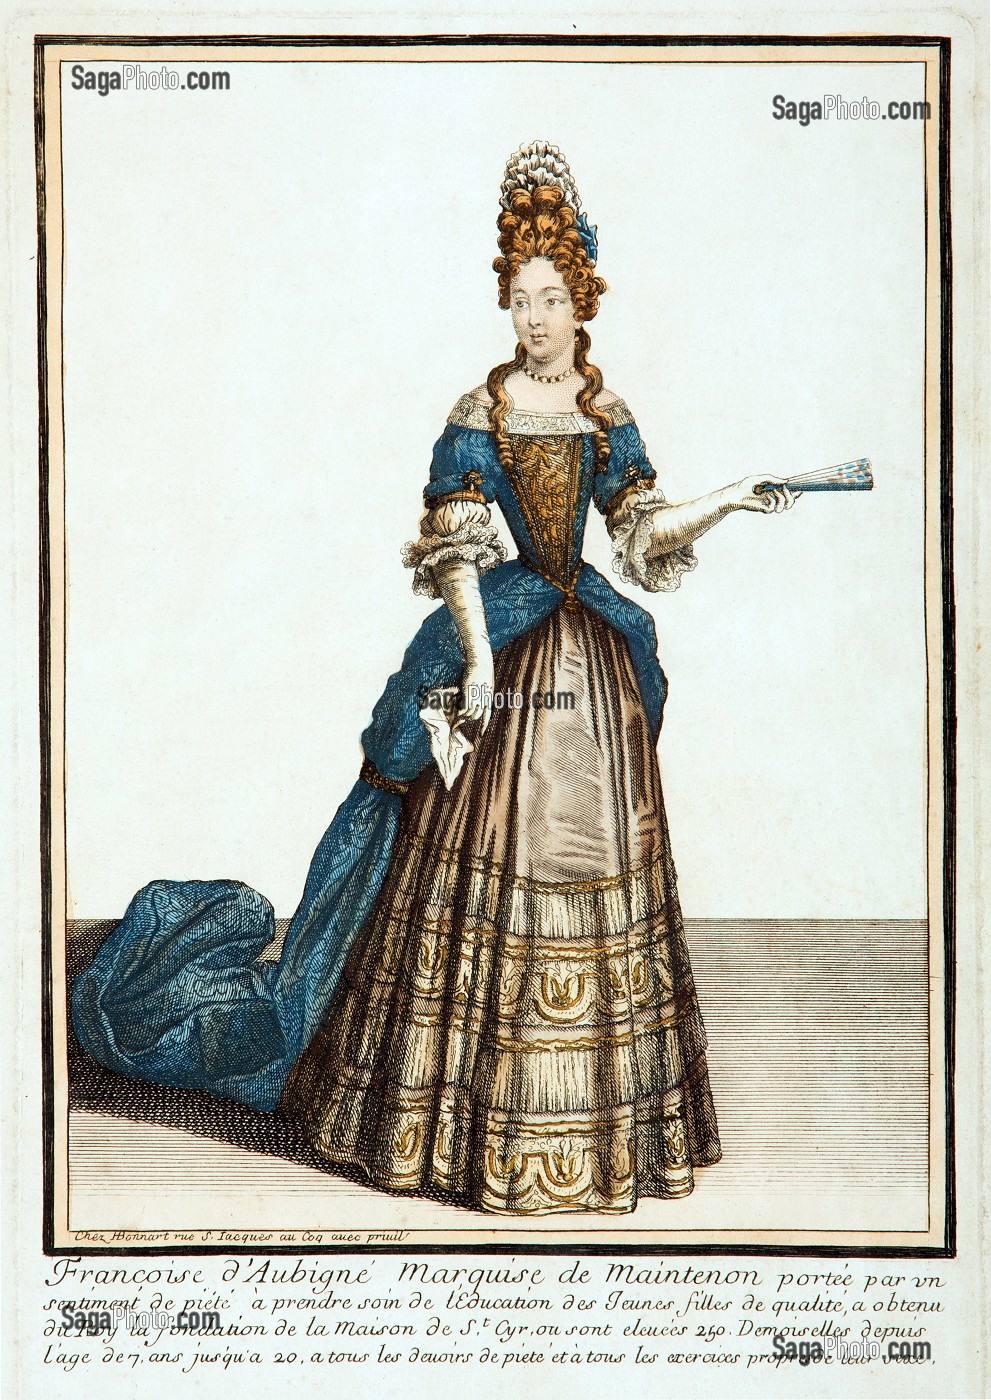 FRANCOISE D'AUBIGNE (1635-1719), FUTURE MADAME DE MAINTENON, GRAVURE EXPOSEE DANS LE COULOIR DES APPARTEMENTS DE MADAME DE MAINTENON, CHATEAU DE MAINTENON, EURE-ET-LOIR (28), FRANCE 